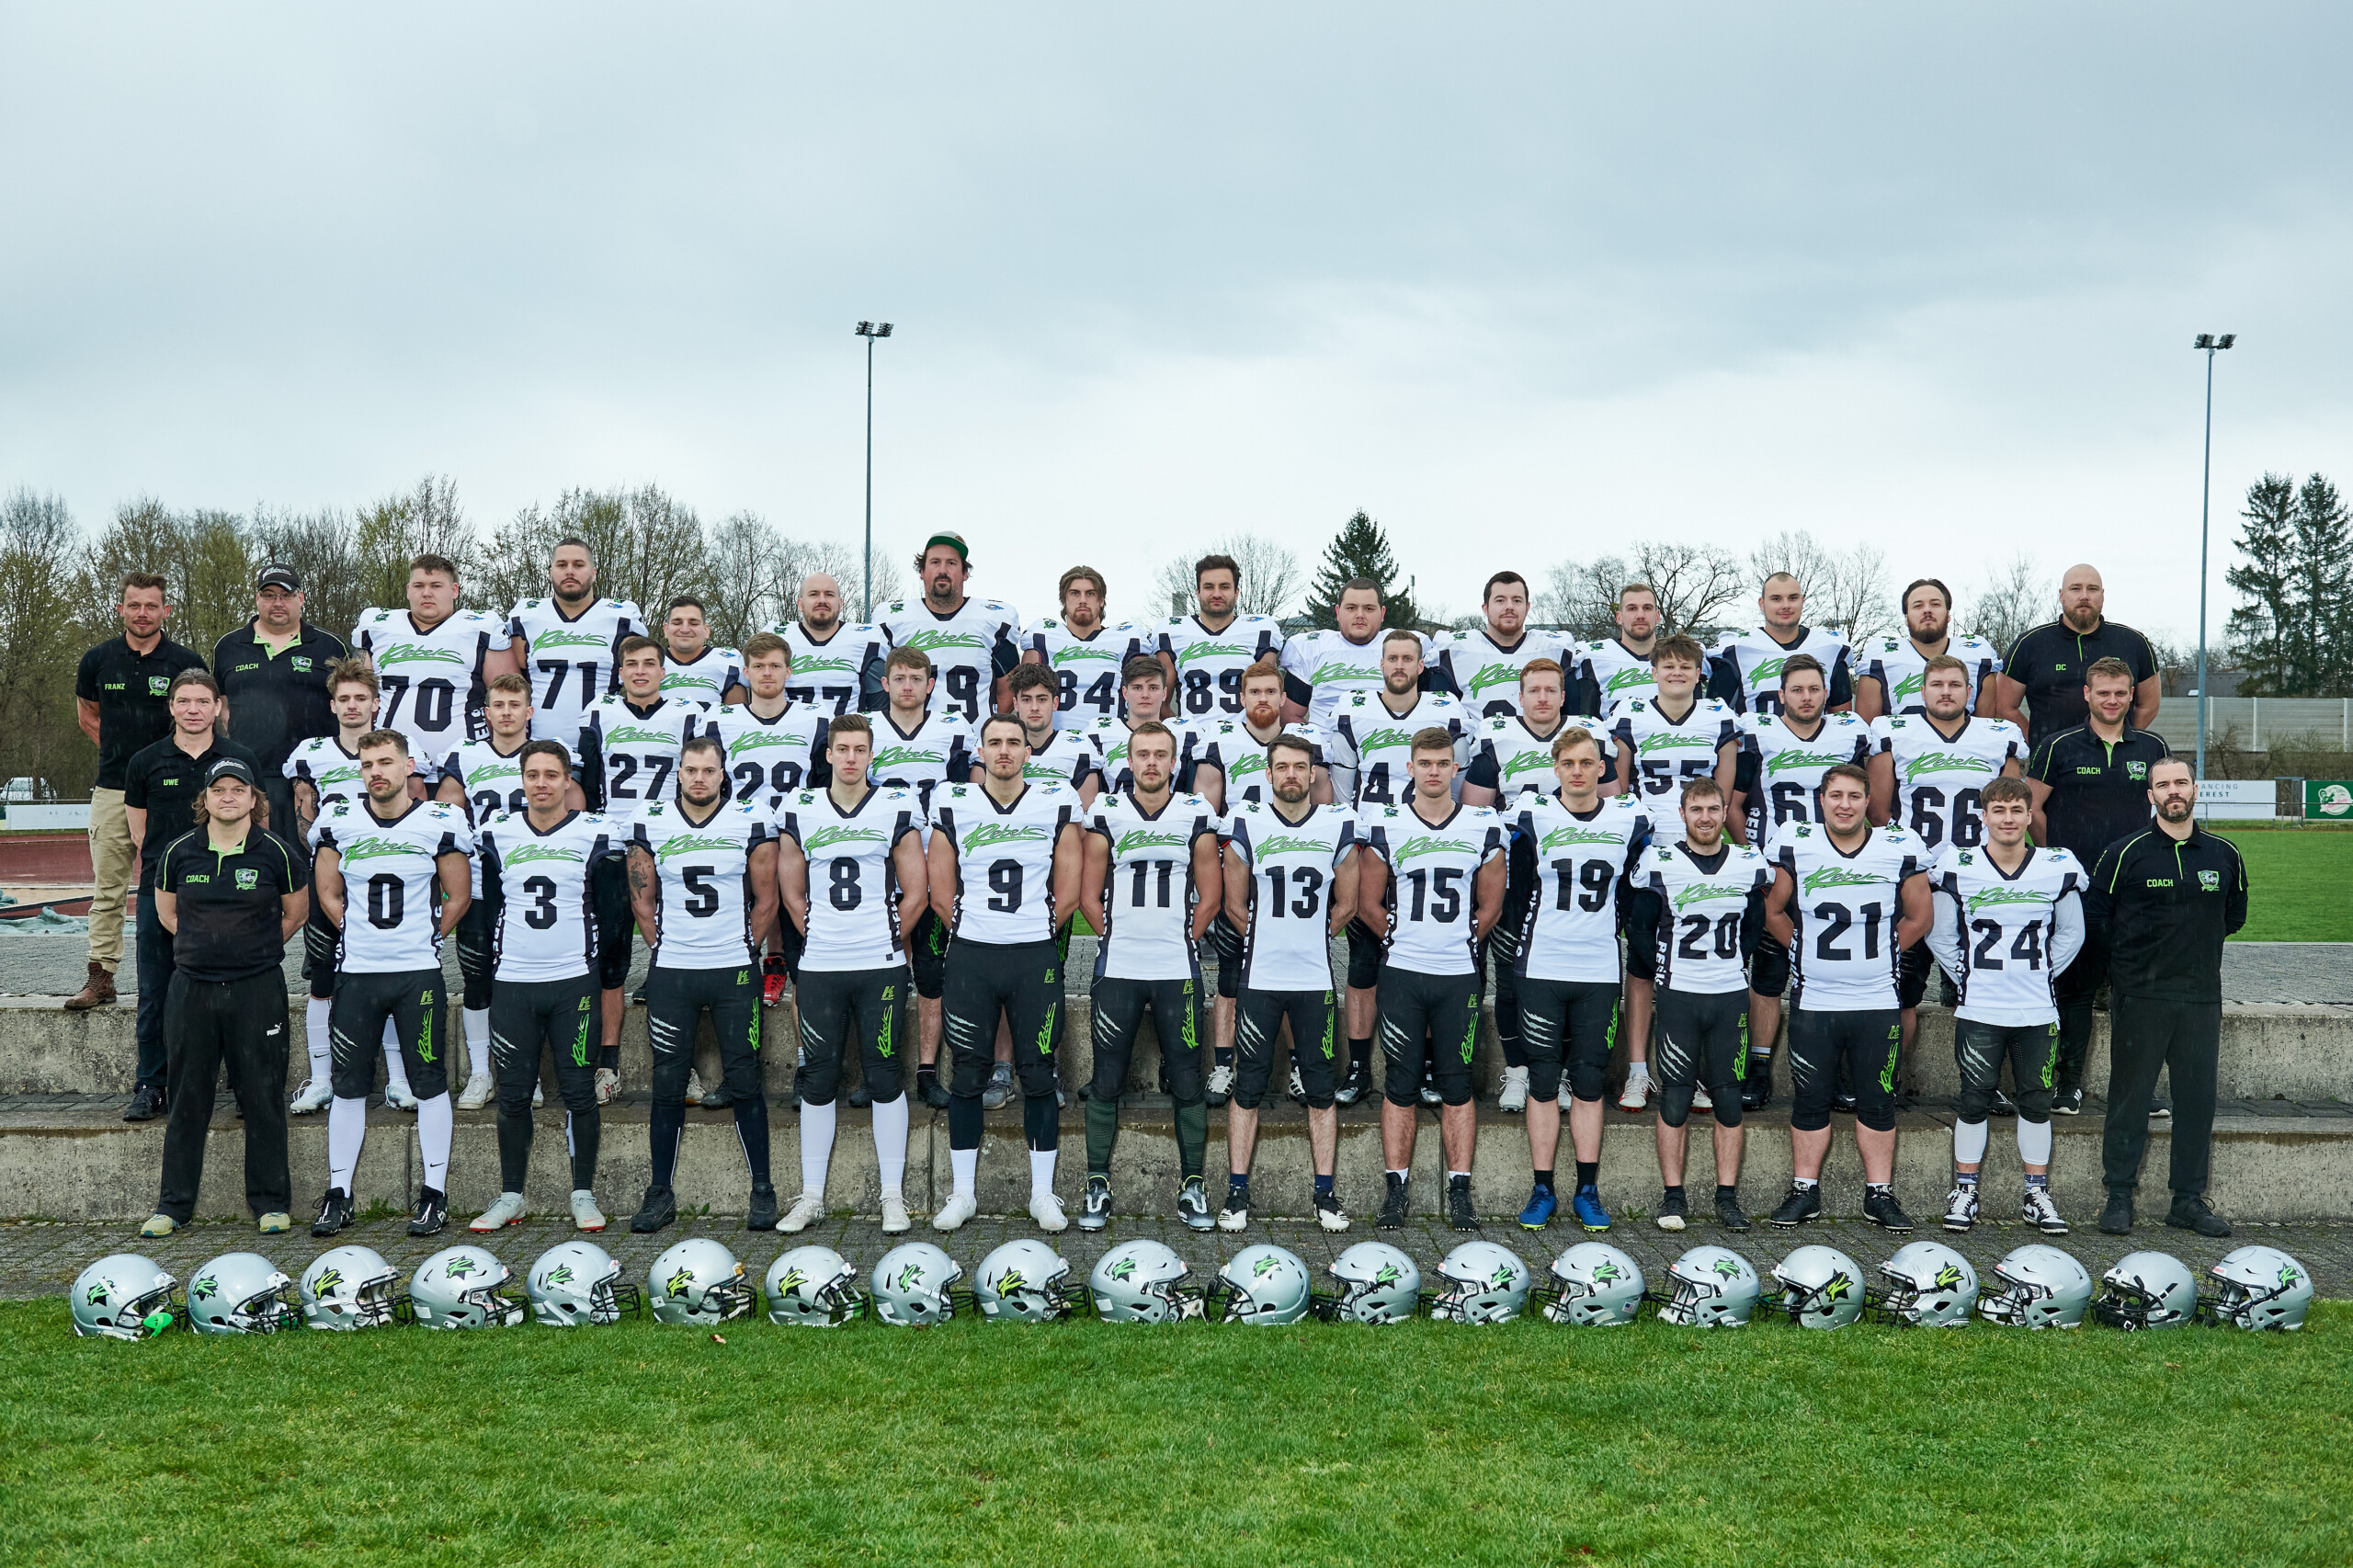 Die neue Season der American Footballer des Sportbund DJK Rosenheim e.V. steht vor der Tür.